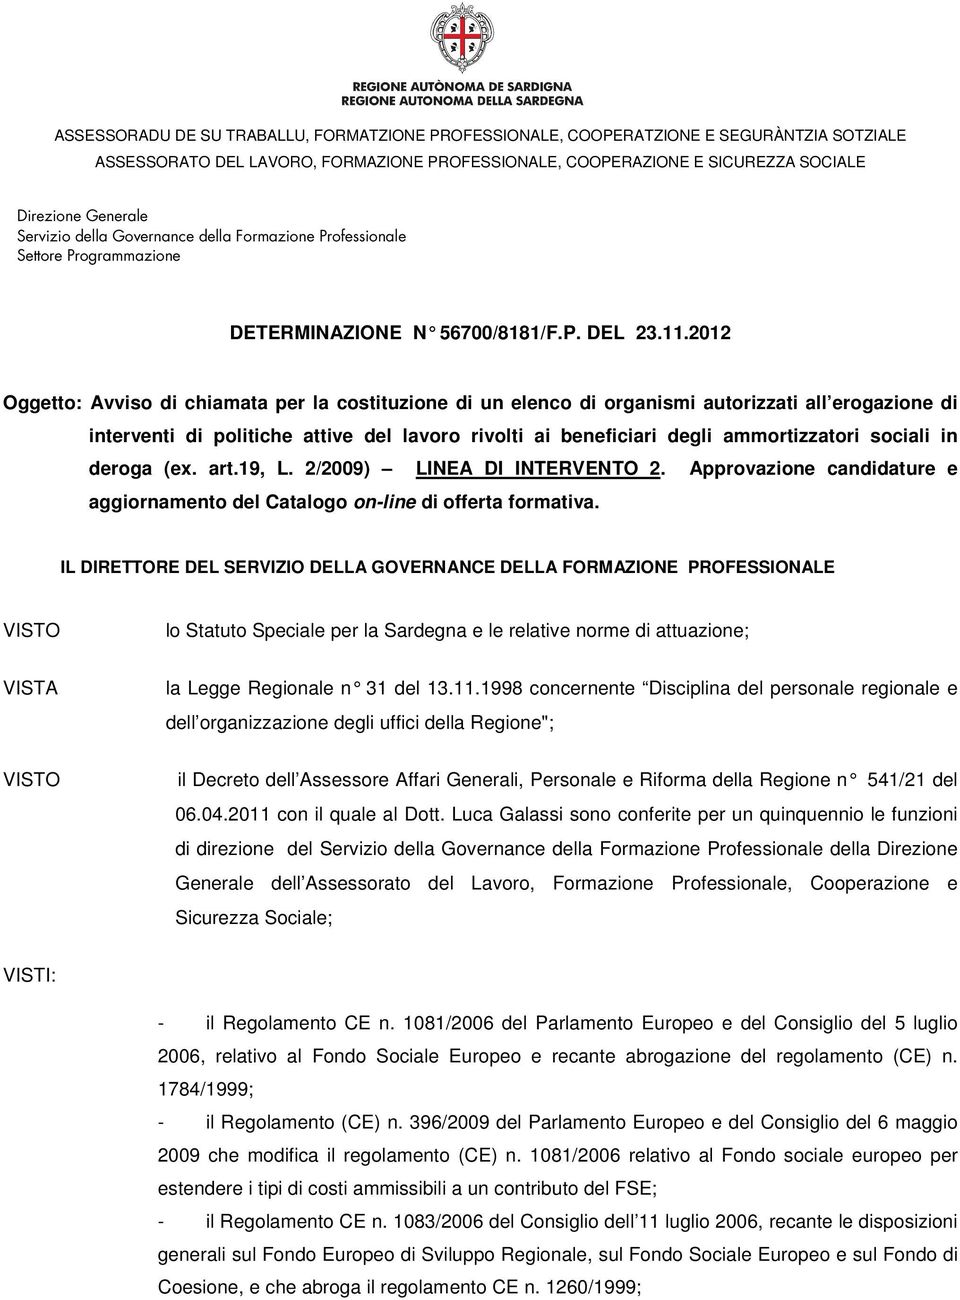 sociali in deroga (ex. art.19, L. 2/2009) LINEA DI INTERVENTO 2. Approvazione candidature e aggiornamento del Catalogo on-line di offerta formativa.